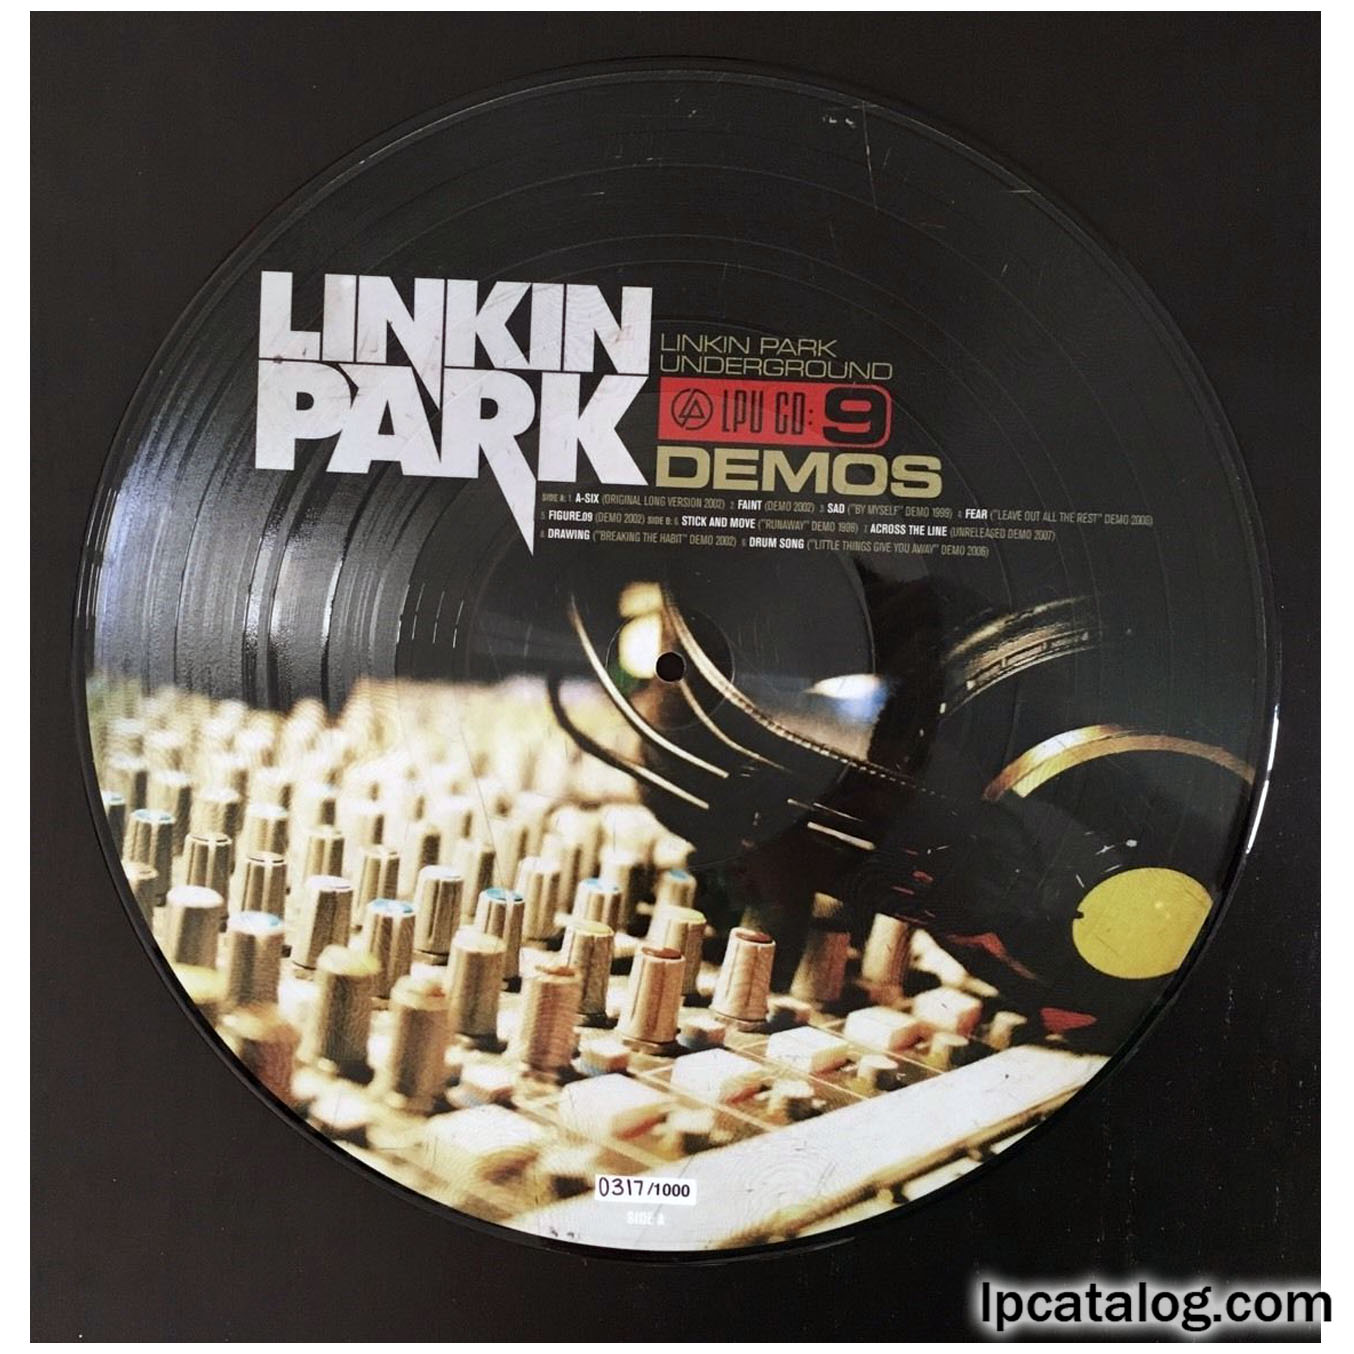 Линкин парк андеграунд. Linkin Park Underground 9. Linkin Park Single. Figure 09 Linkin Park. Linkin park demos